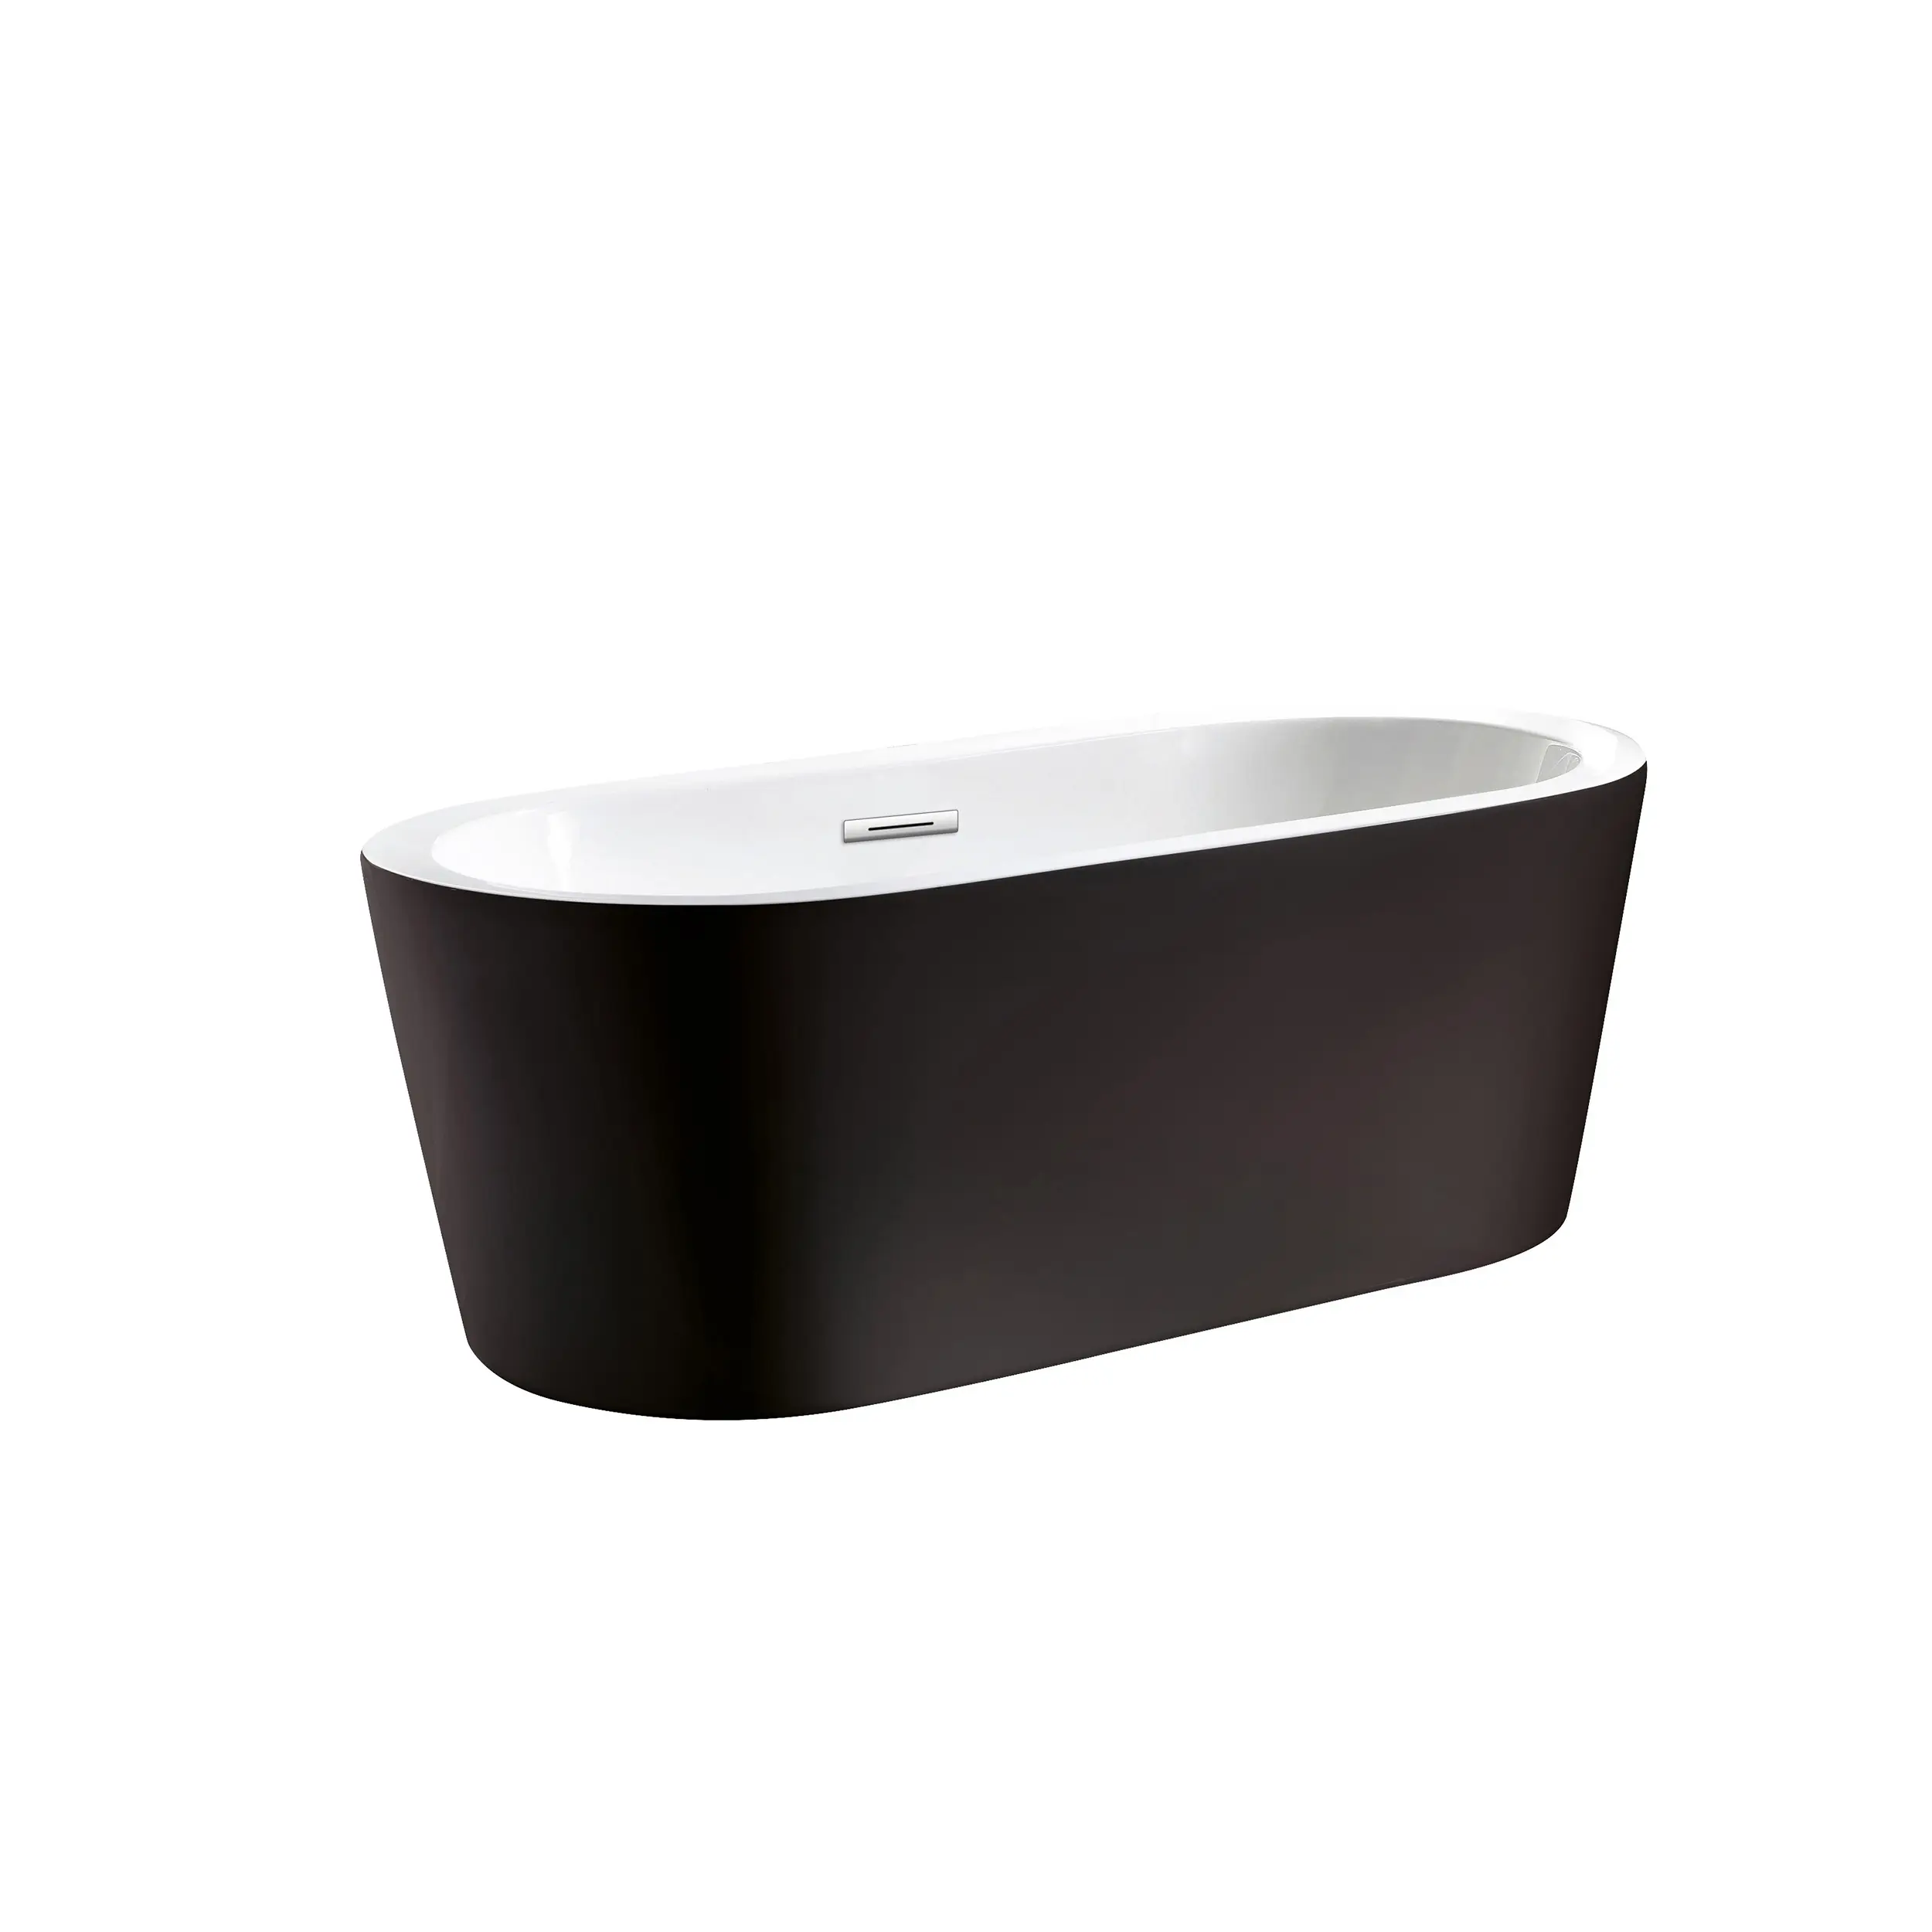 Bañera de baño ovalada moderna de China, Color negro, acrílica